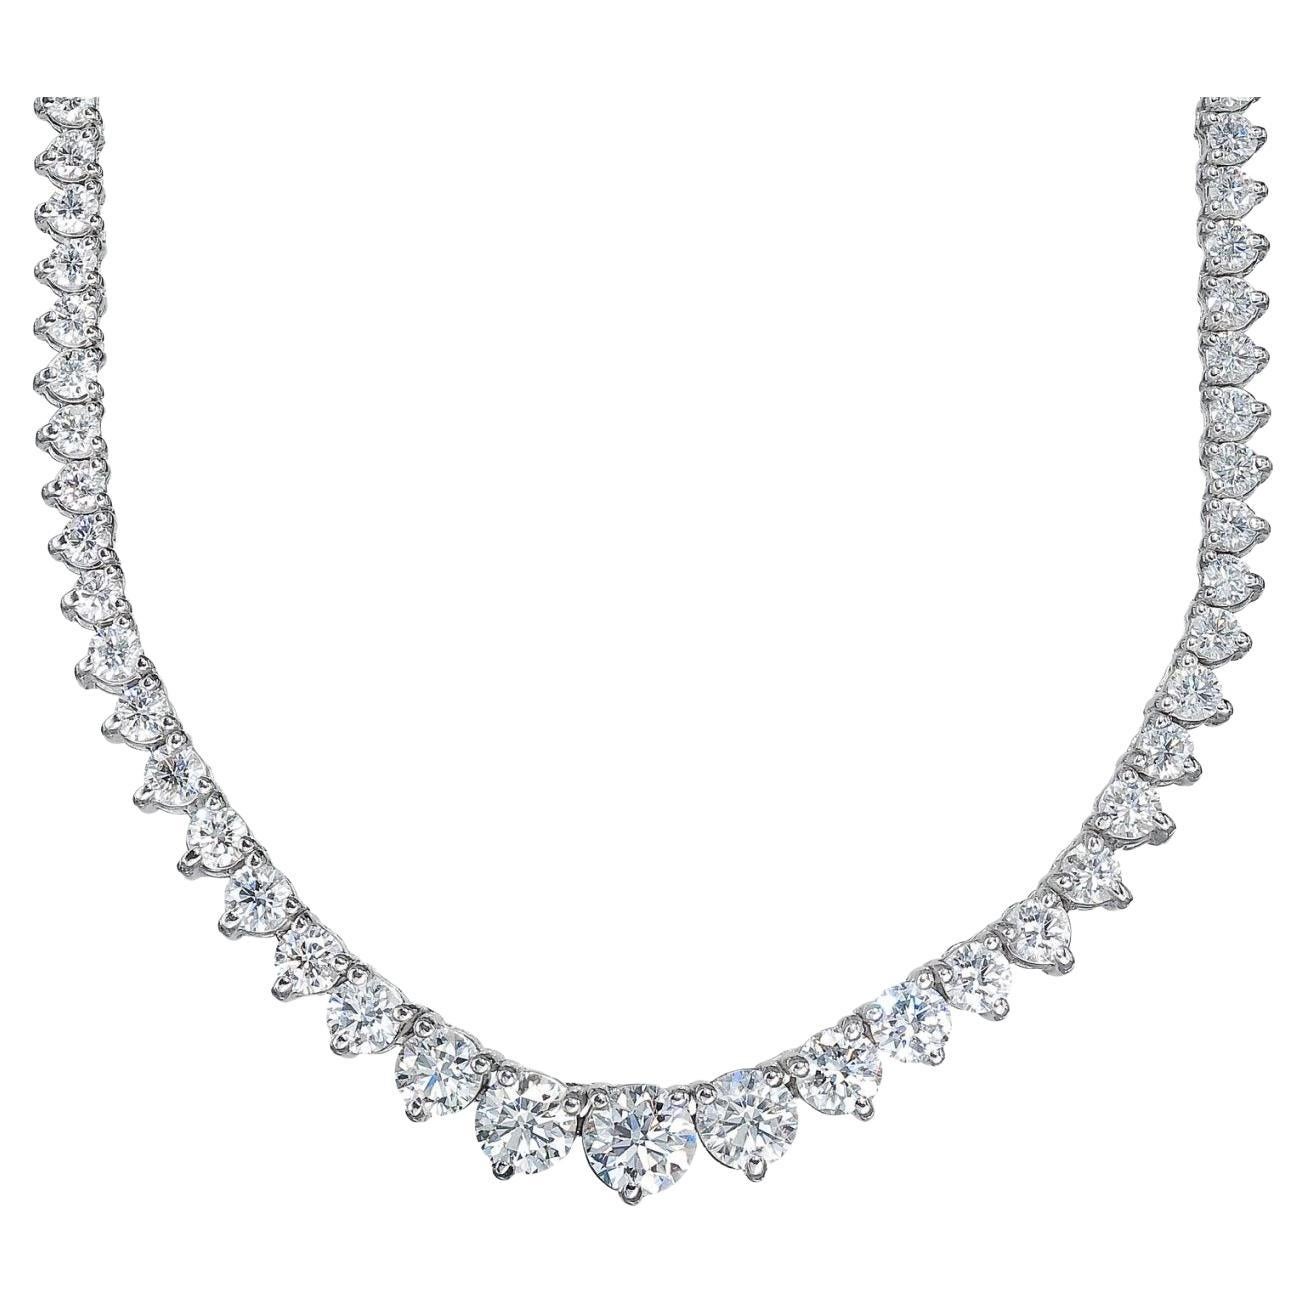 Abgestufte Tennis-Halskette mit 3 runden Diamanten in Zackenform.  D13.58ct.t.w.